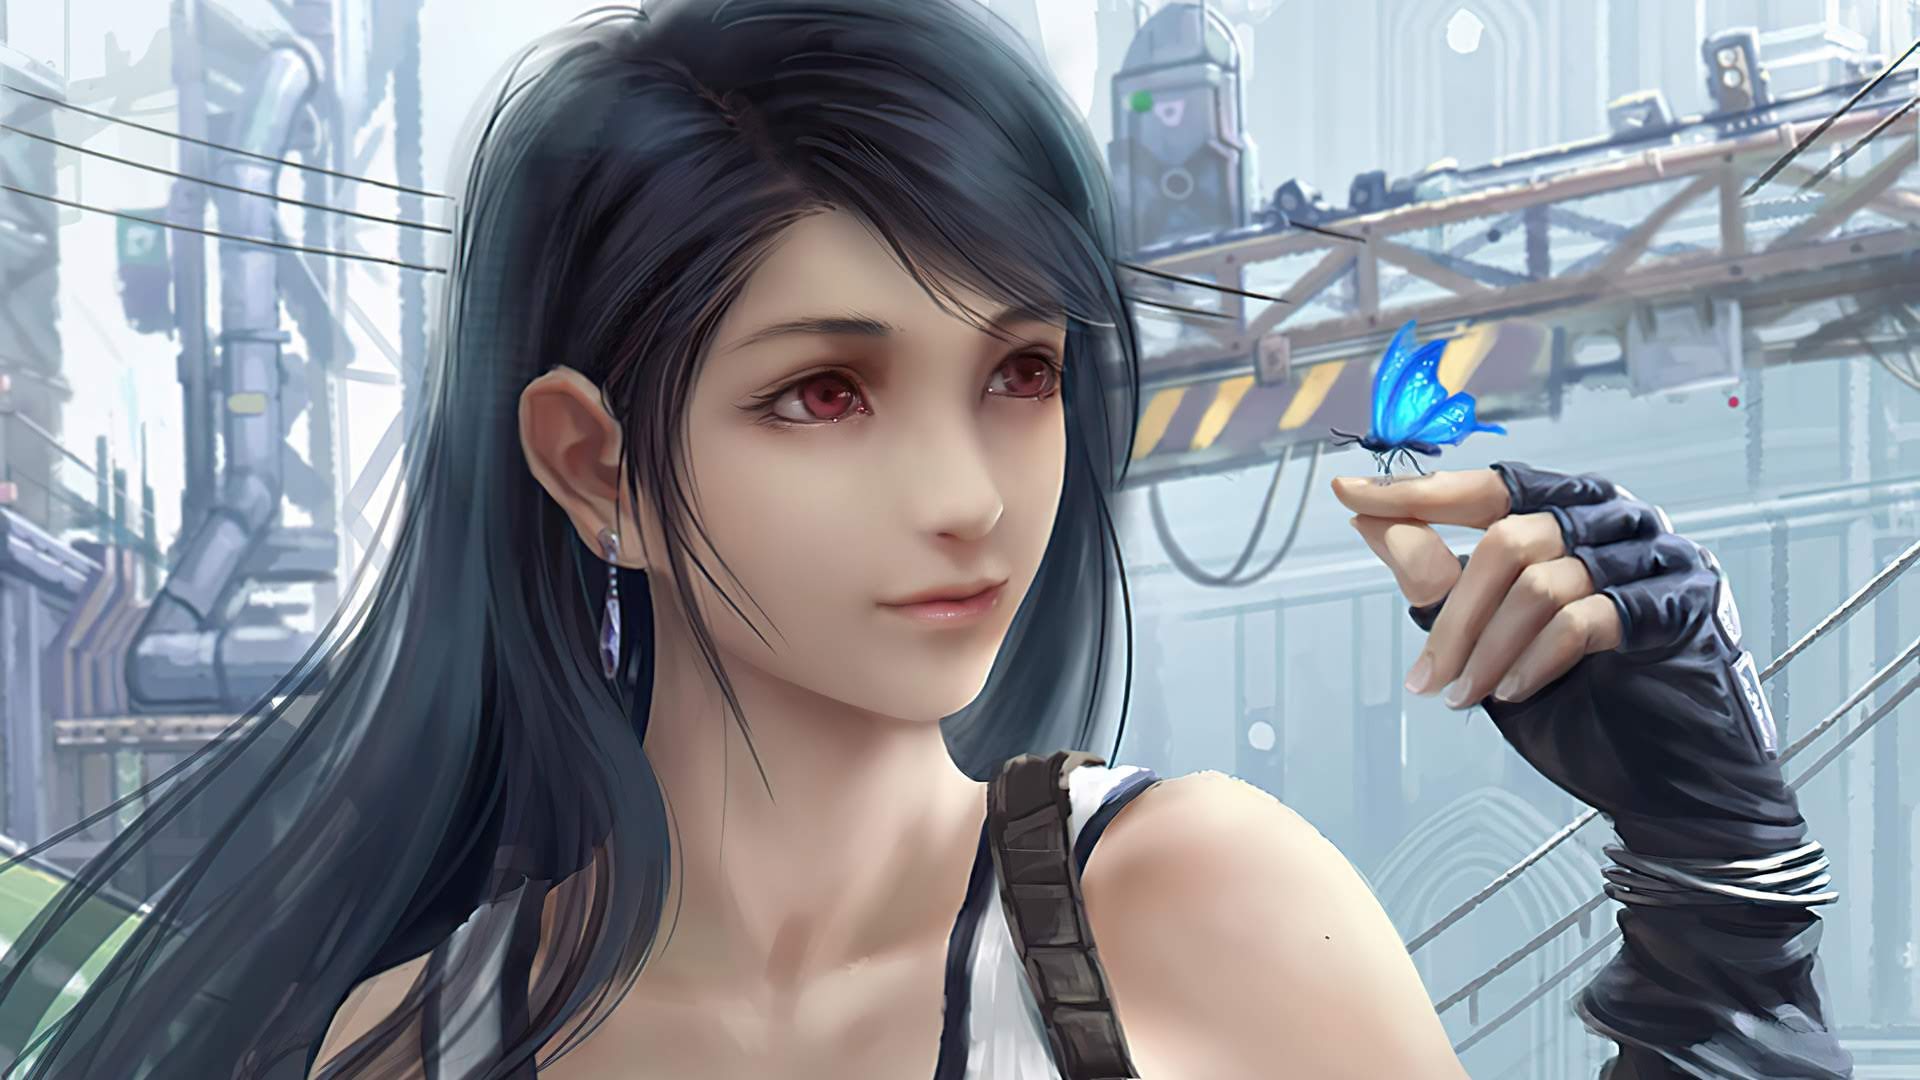 Tifa from Final Fantasy by Peng Wang